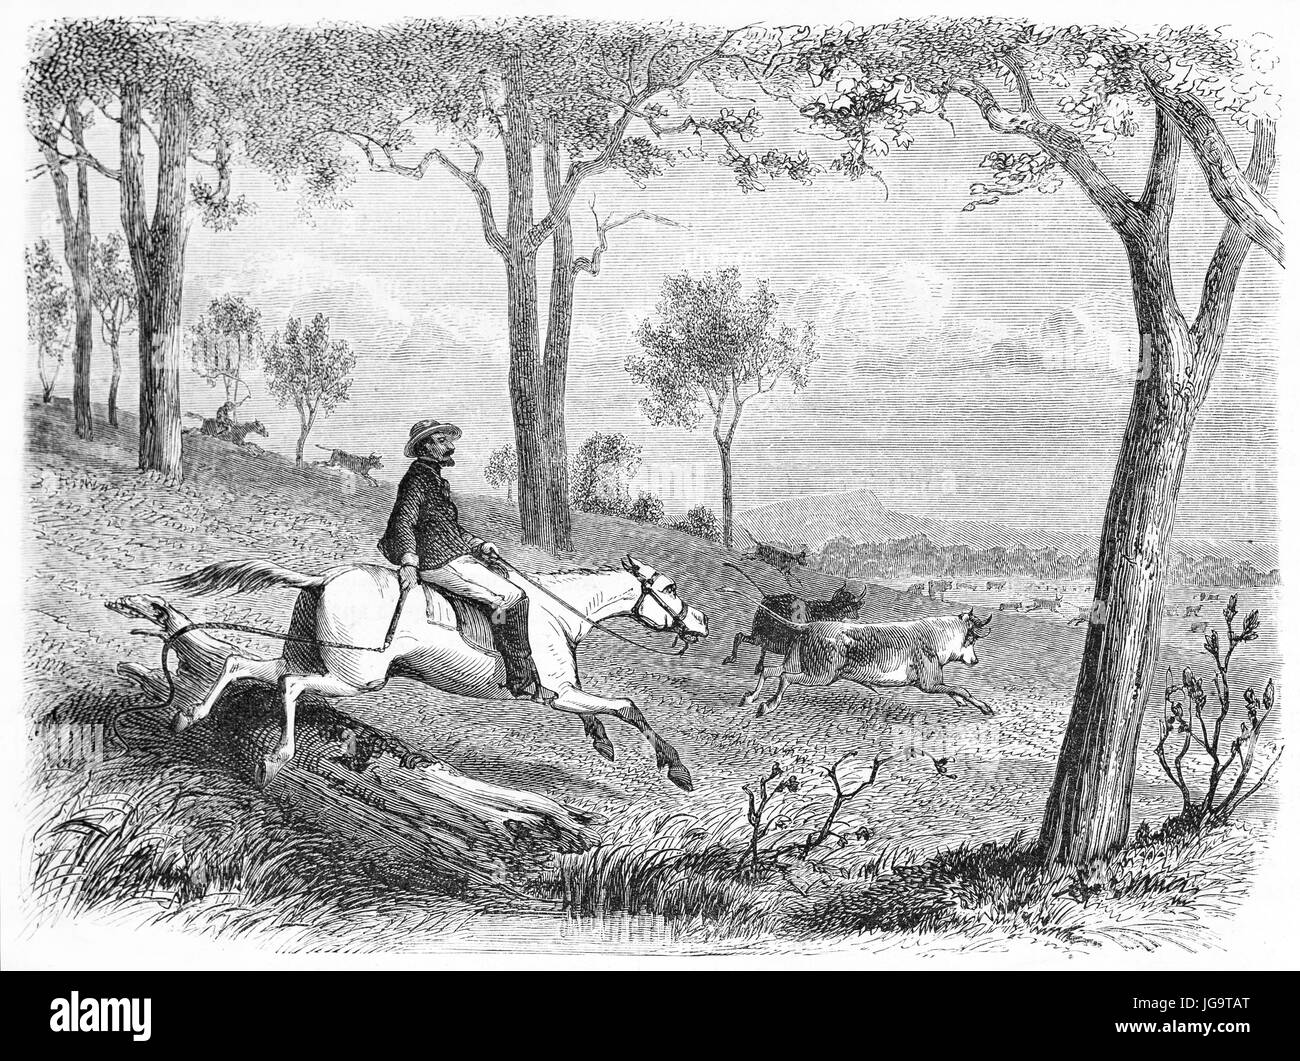 Élevage australien de troupeaux de chevaux dans la nature. Art de style gravure de tons gris anciens par Girardet et Pannemaker, publié sur 1861 Banque D'Images